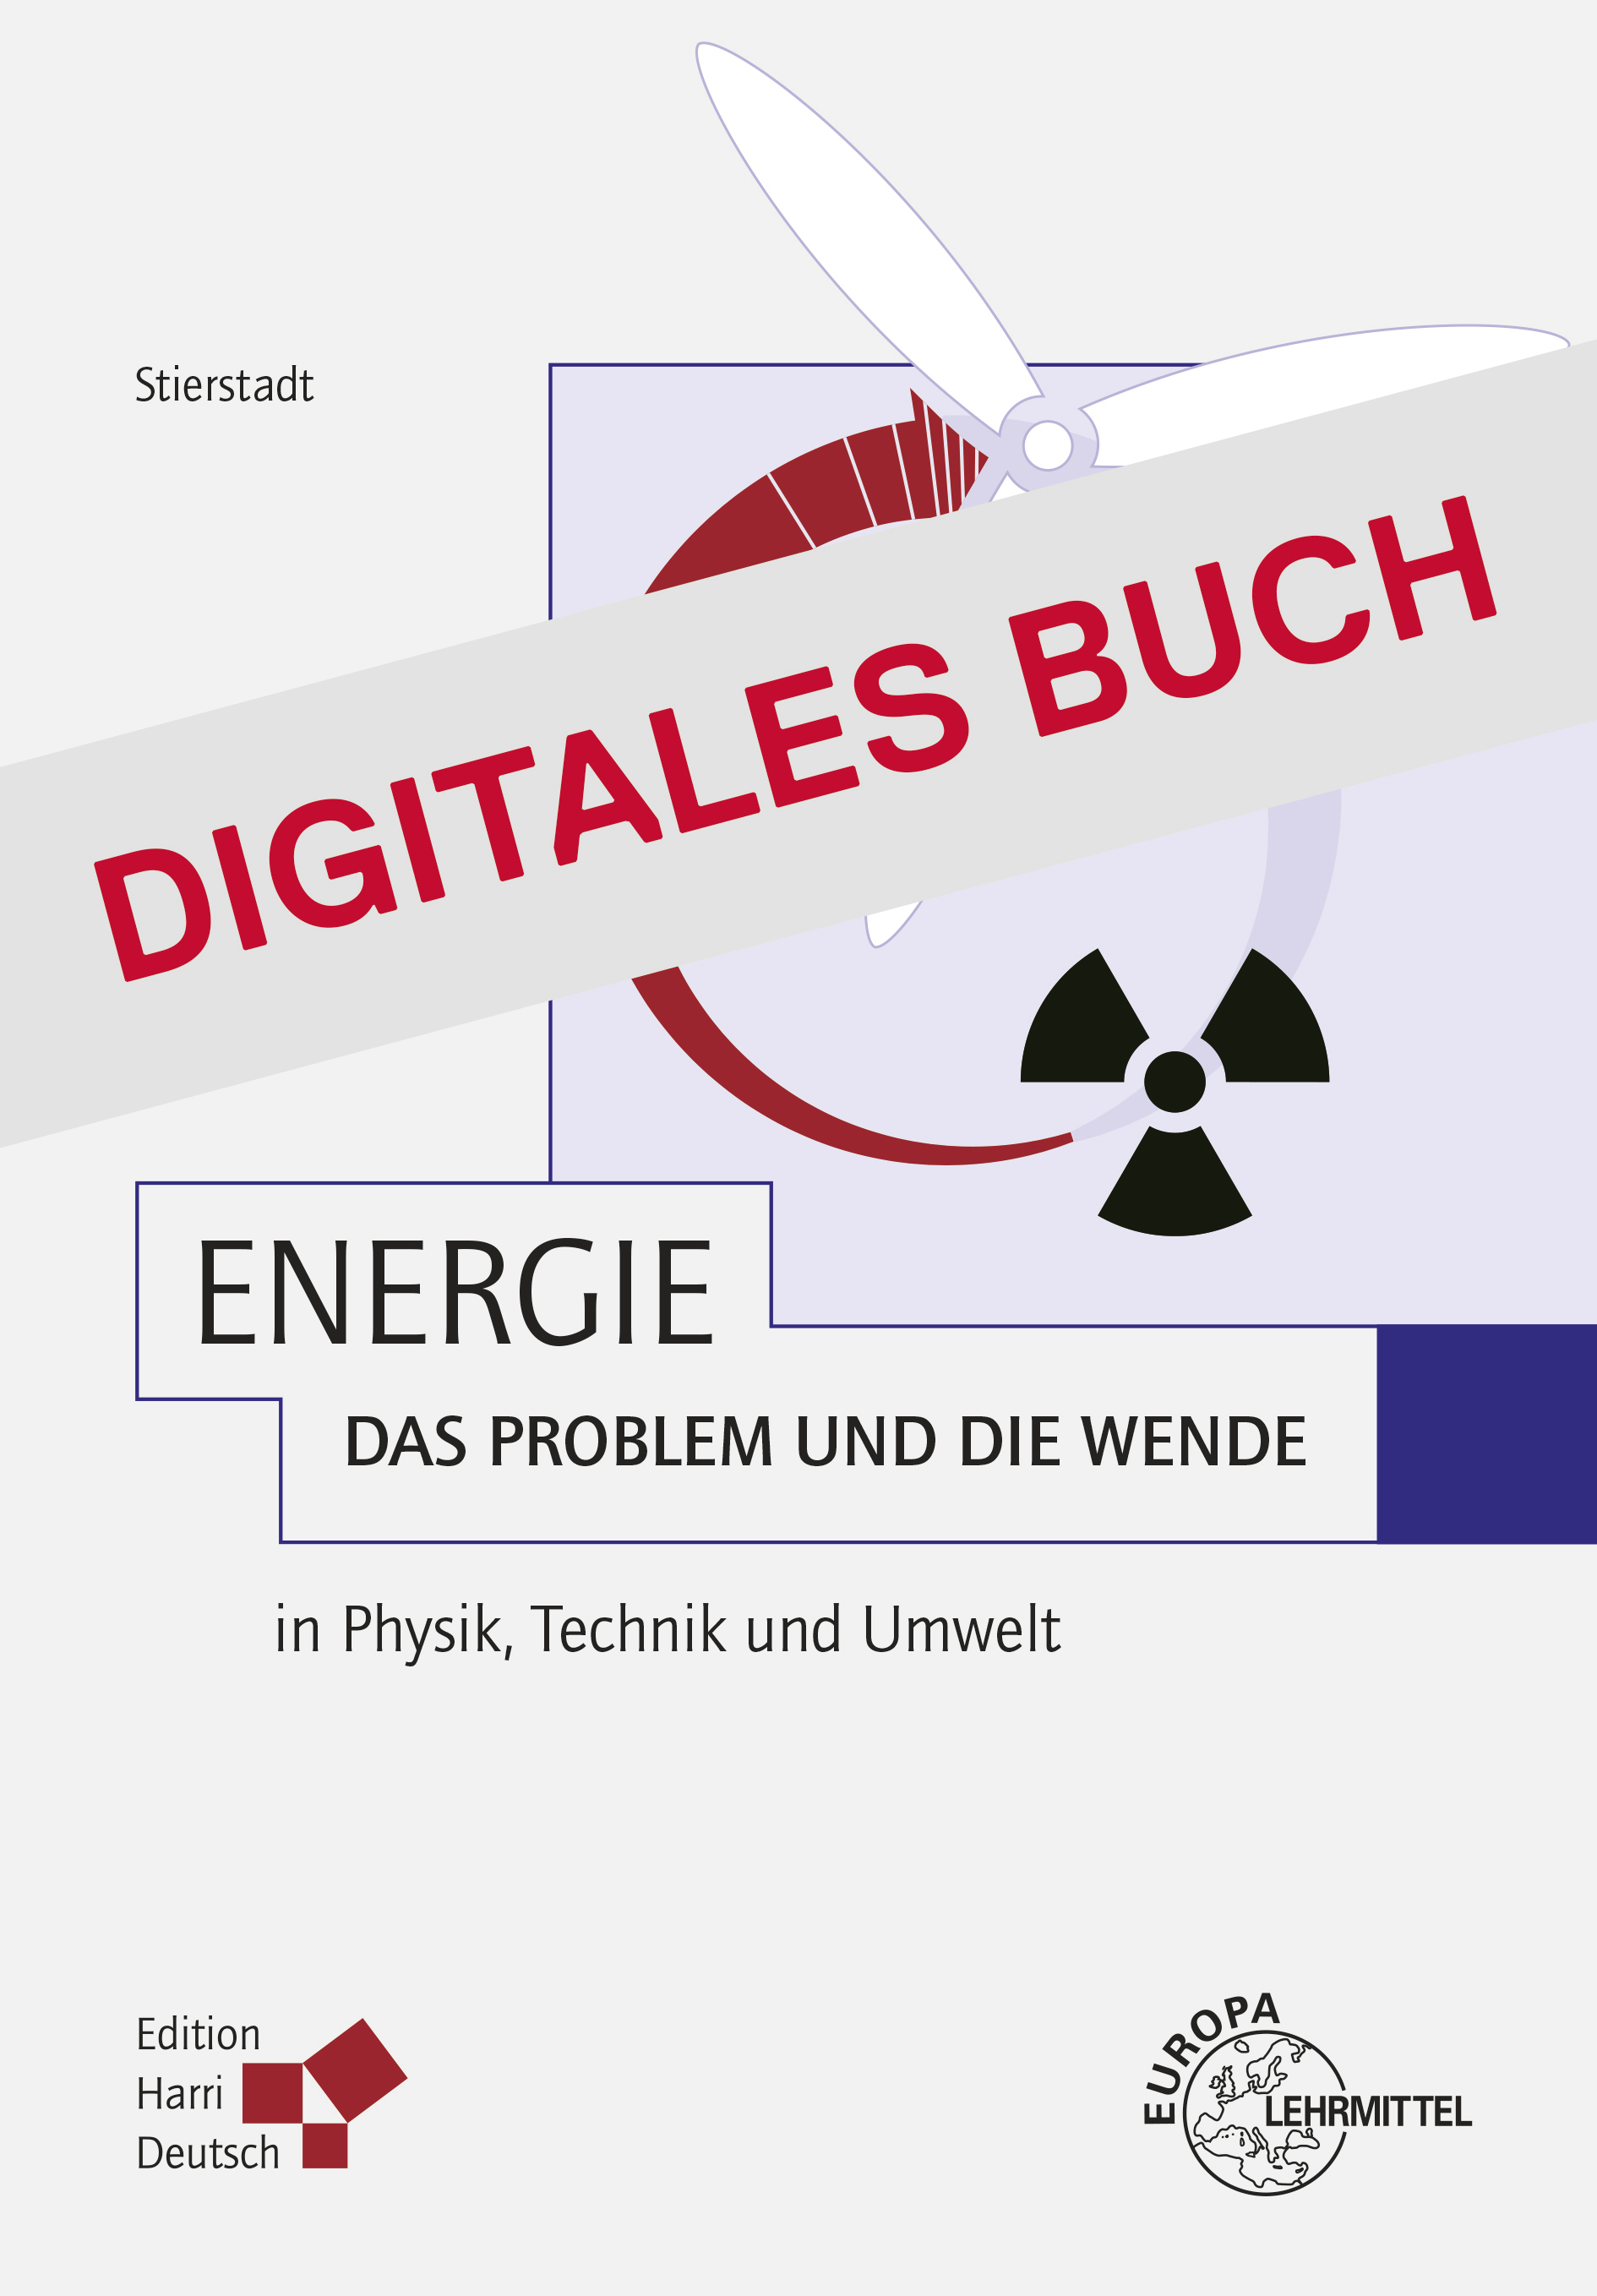 Energie - Das Problem und die Wende (Stierstadt) - Digitales Buch